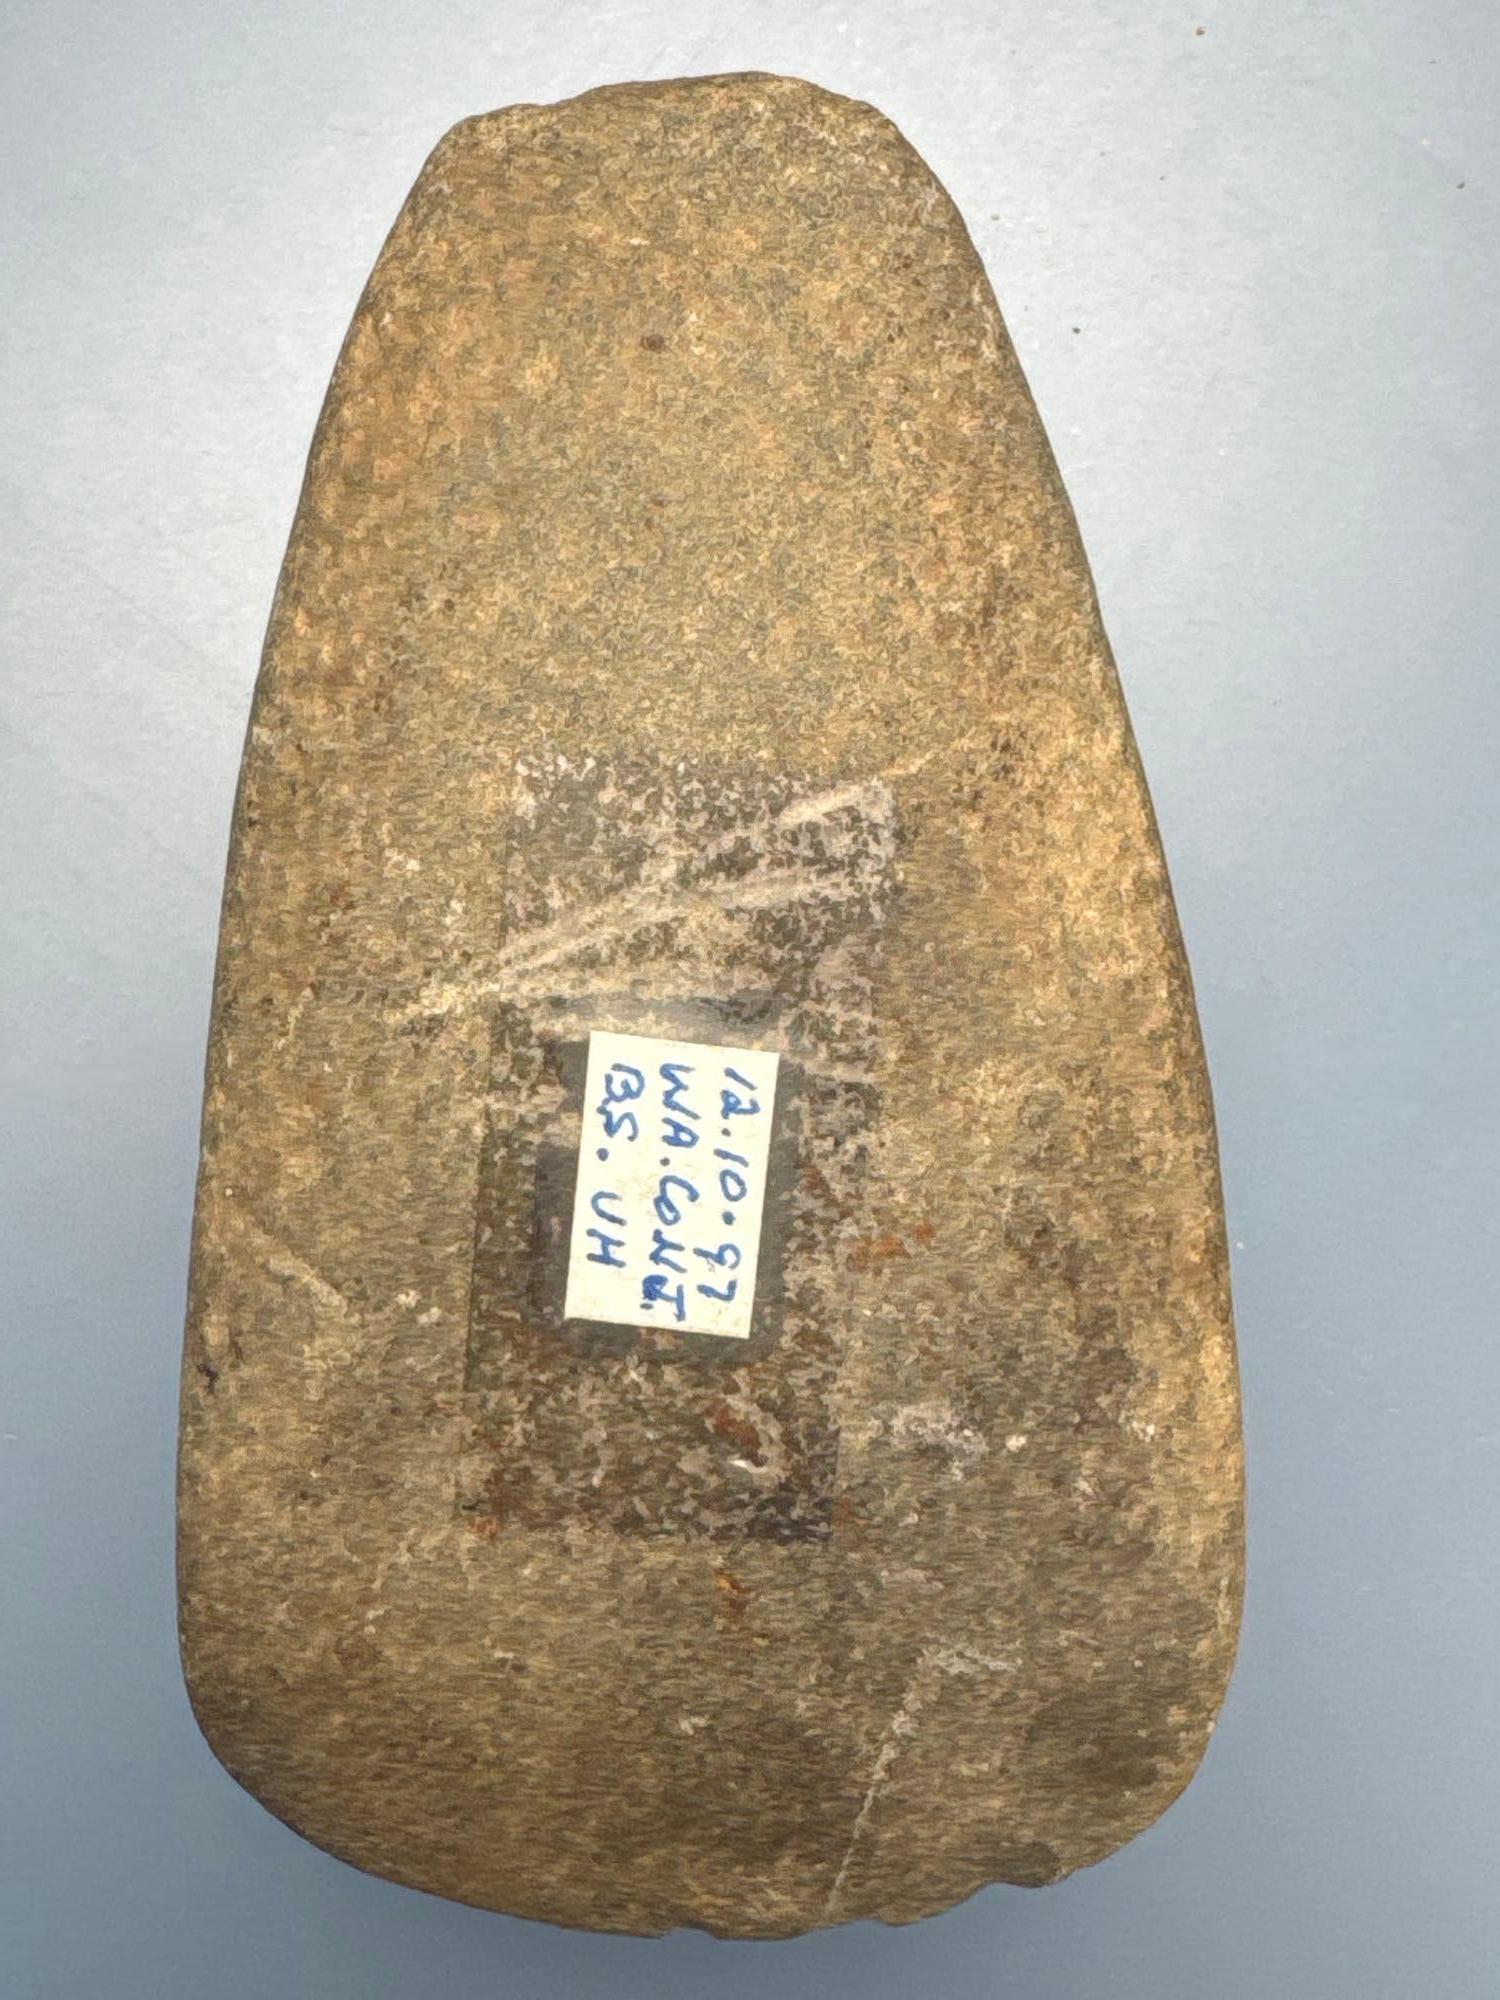 3 3/8" Celt, Found in Warren Co., NJ, Ex: Bob Sharp, Walt Podpora Collection